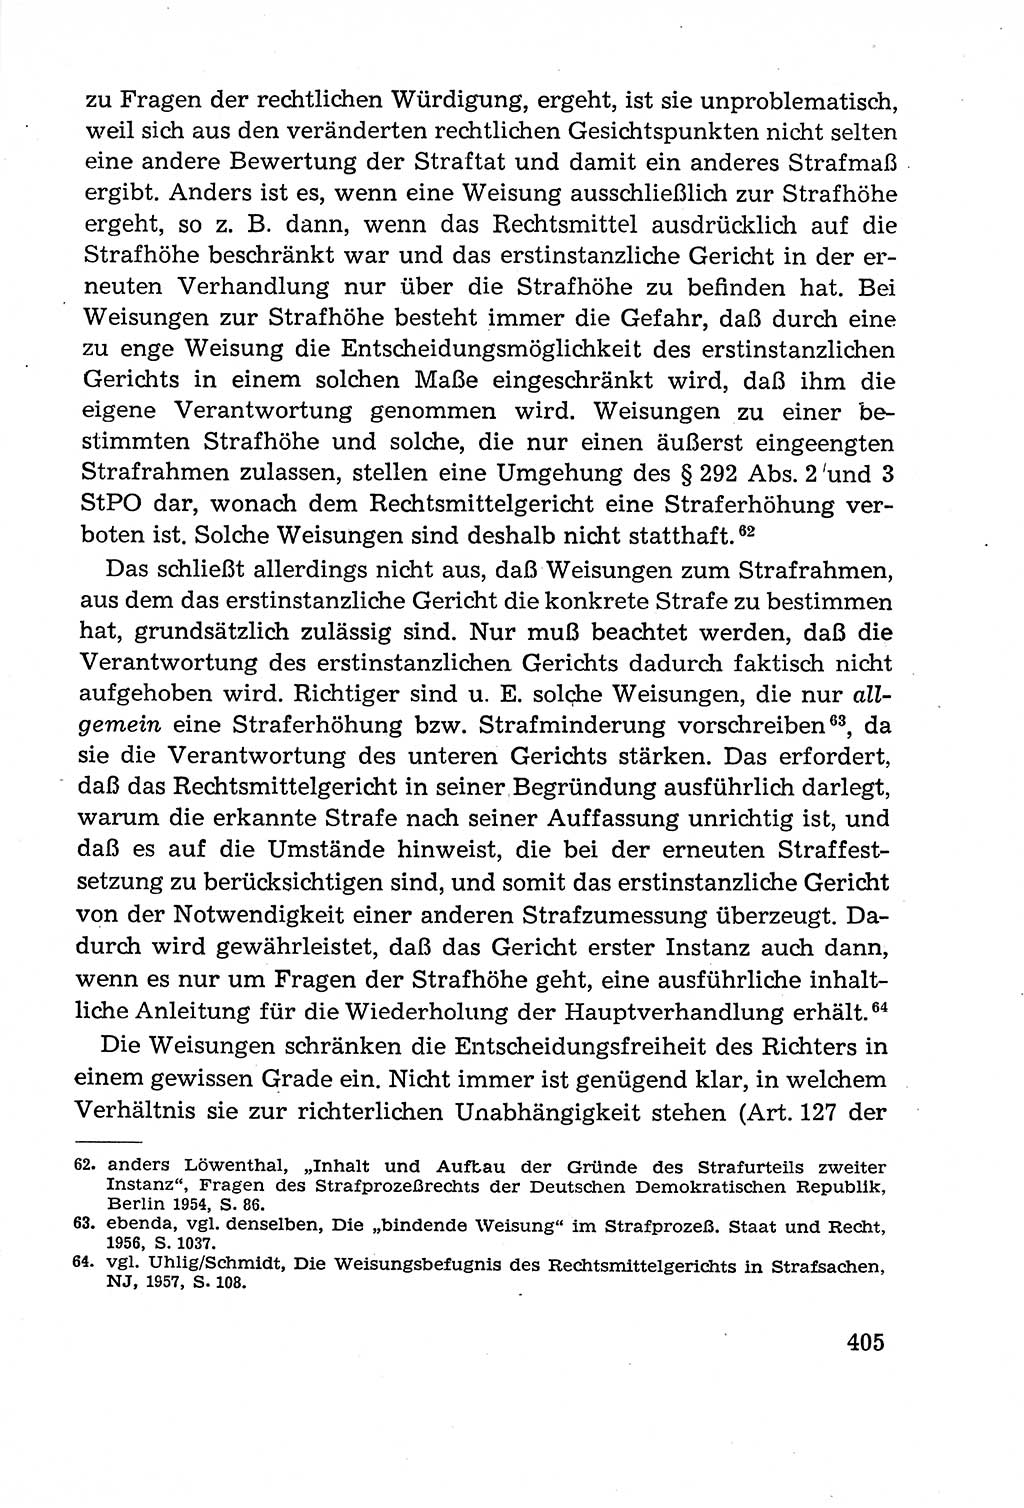 Leitfaden des Strafprozeßrechts der Deutschen Demokratischen Republik (DDR) 1959, Seite 405 (LF StPR DDR 1959, S. 405)